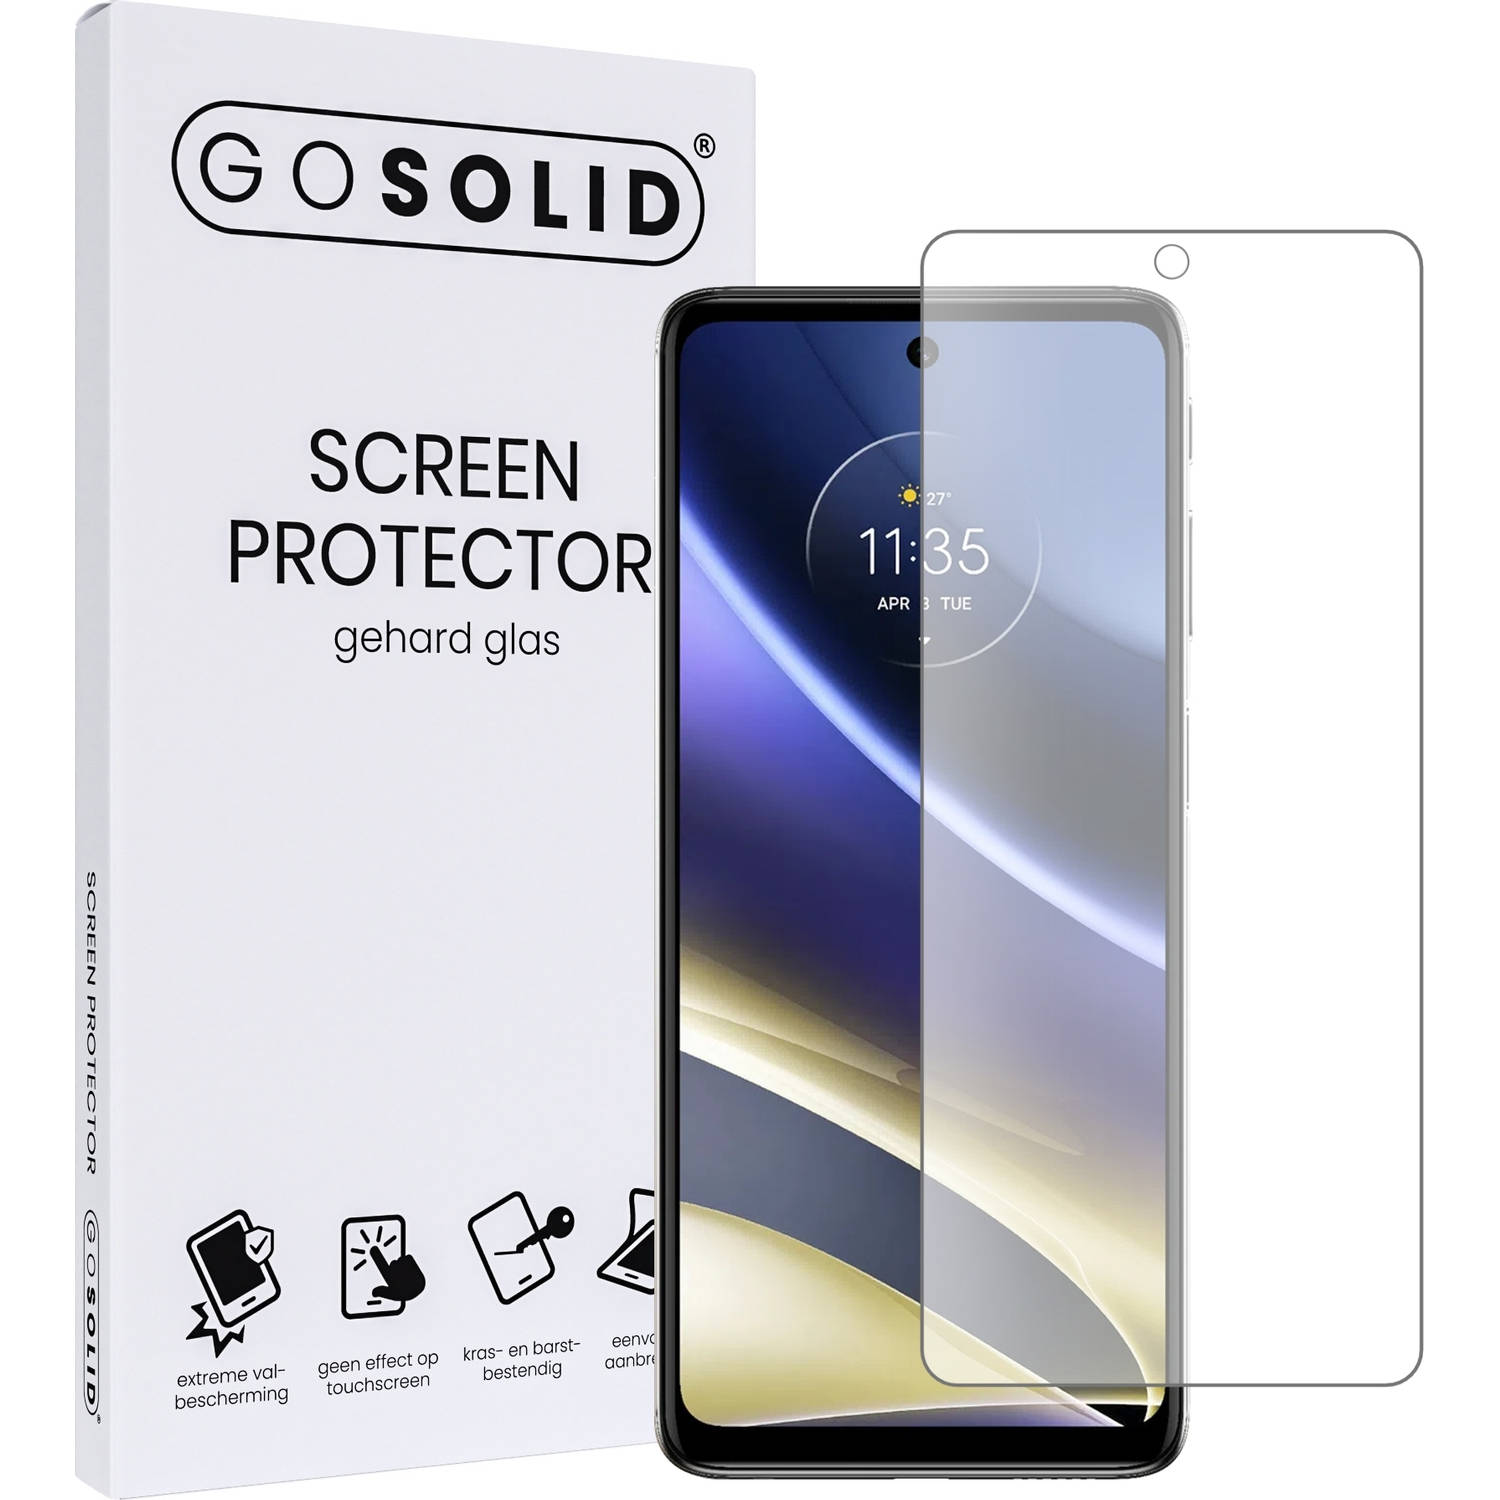 GO SOLID! ® Screenprotector geschikt voor Motorola Moto G51 gehard glas